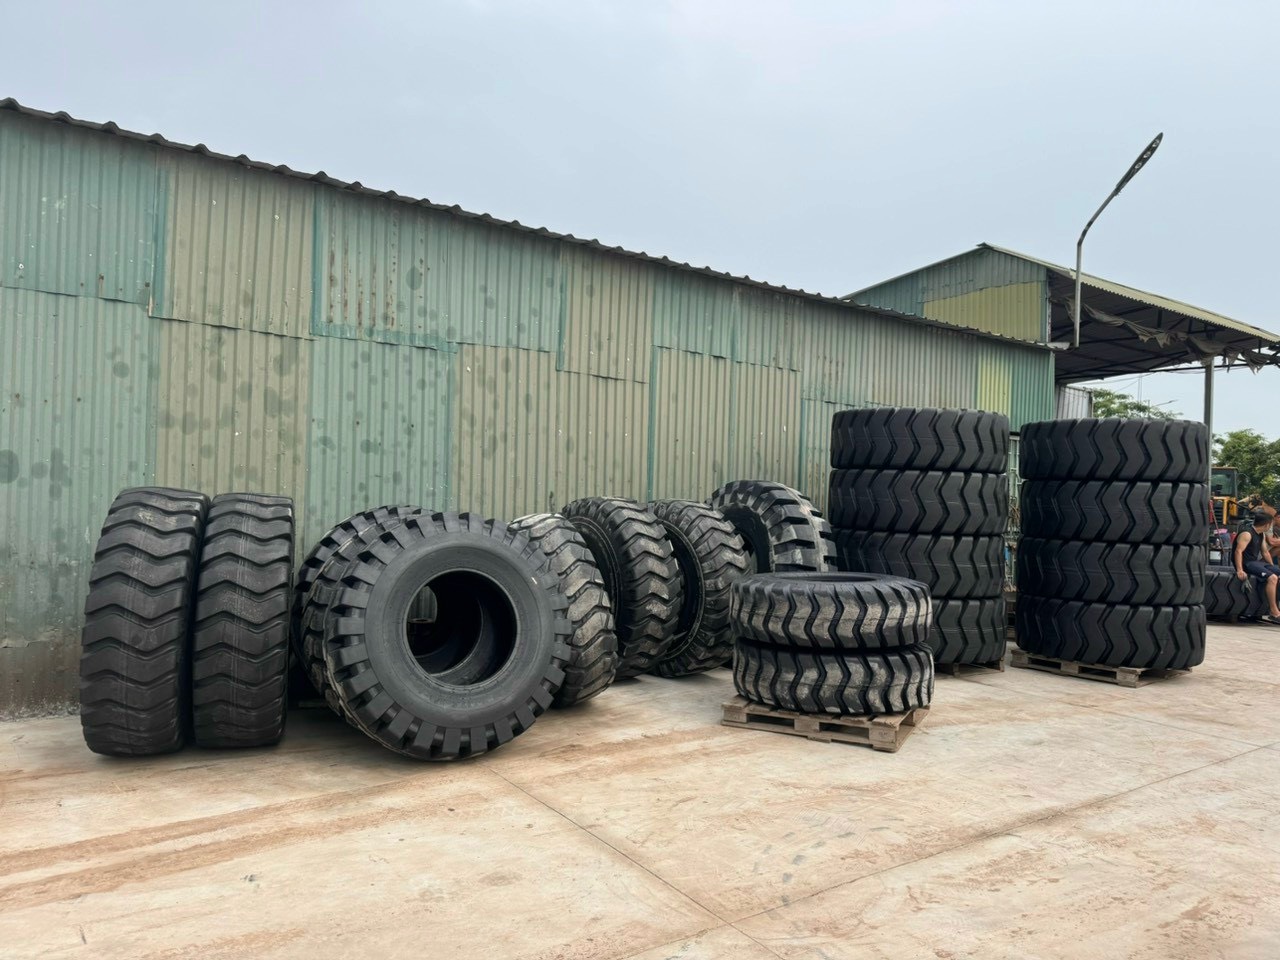 Tìm nơi bán lốp máy xúc lật giá rẻ, hàng chất lượng tại Bắc Giang